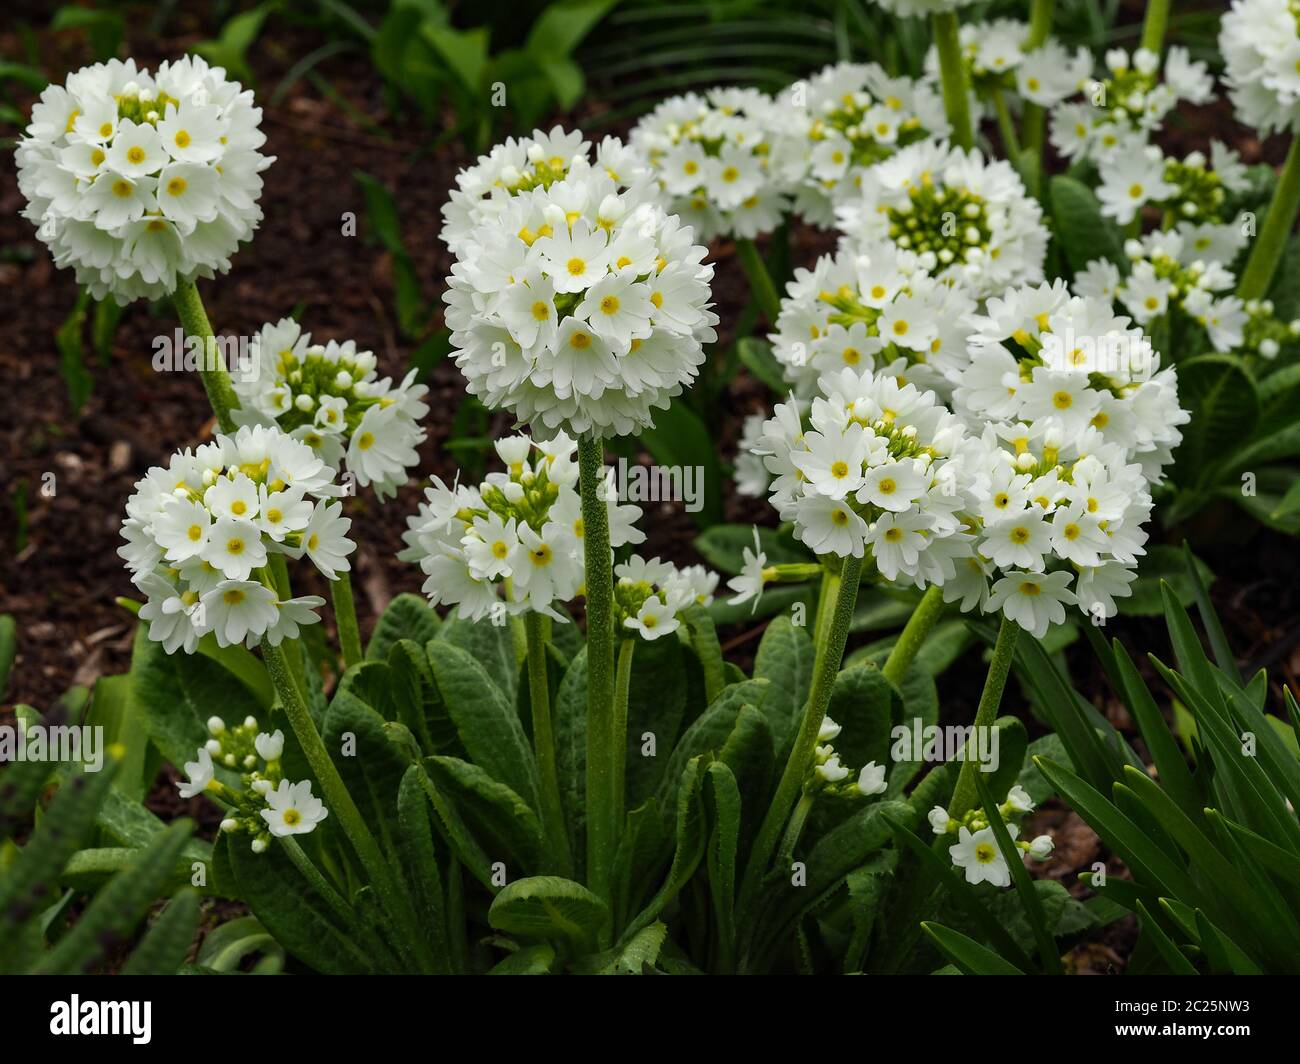 White drumstick primulas (Primula denticulata alba) in a spring garden Stock Photo